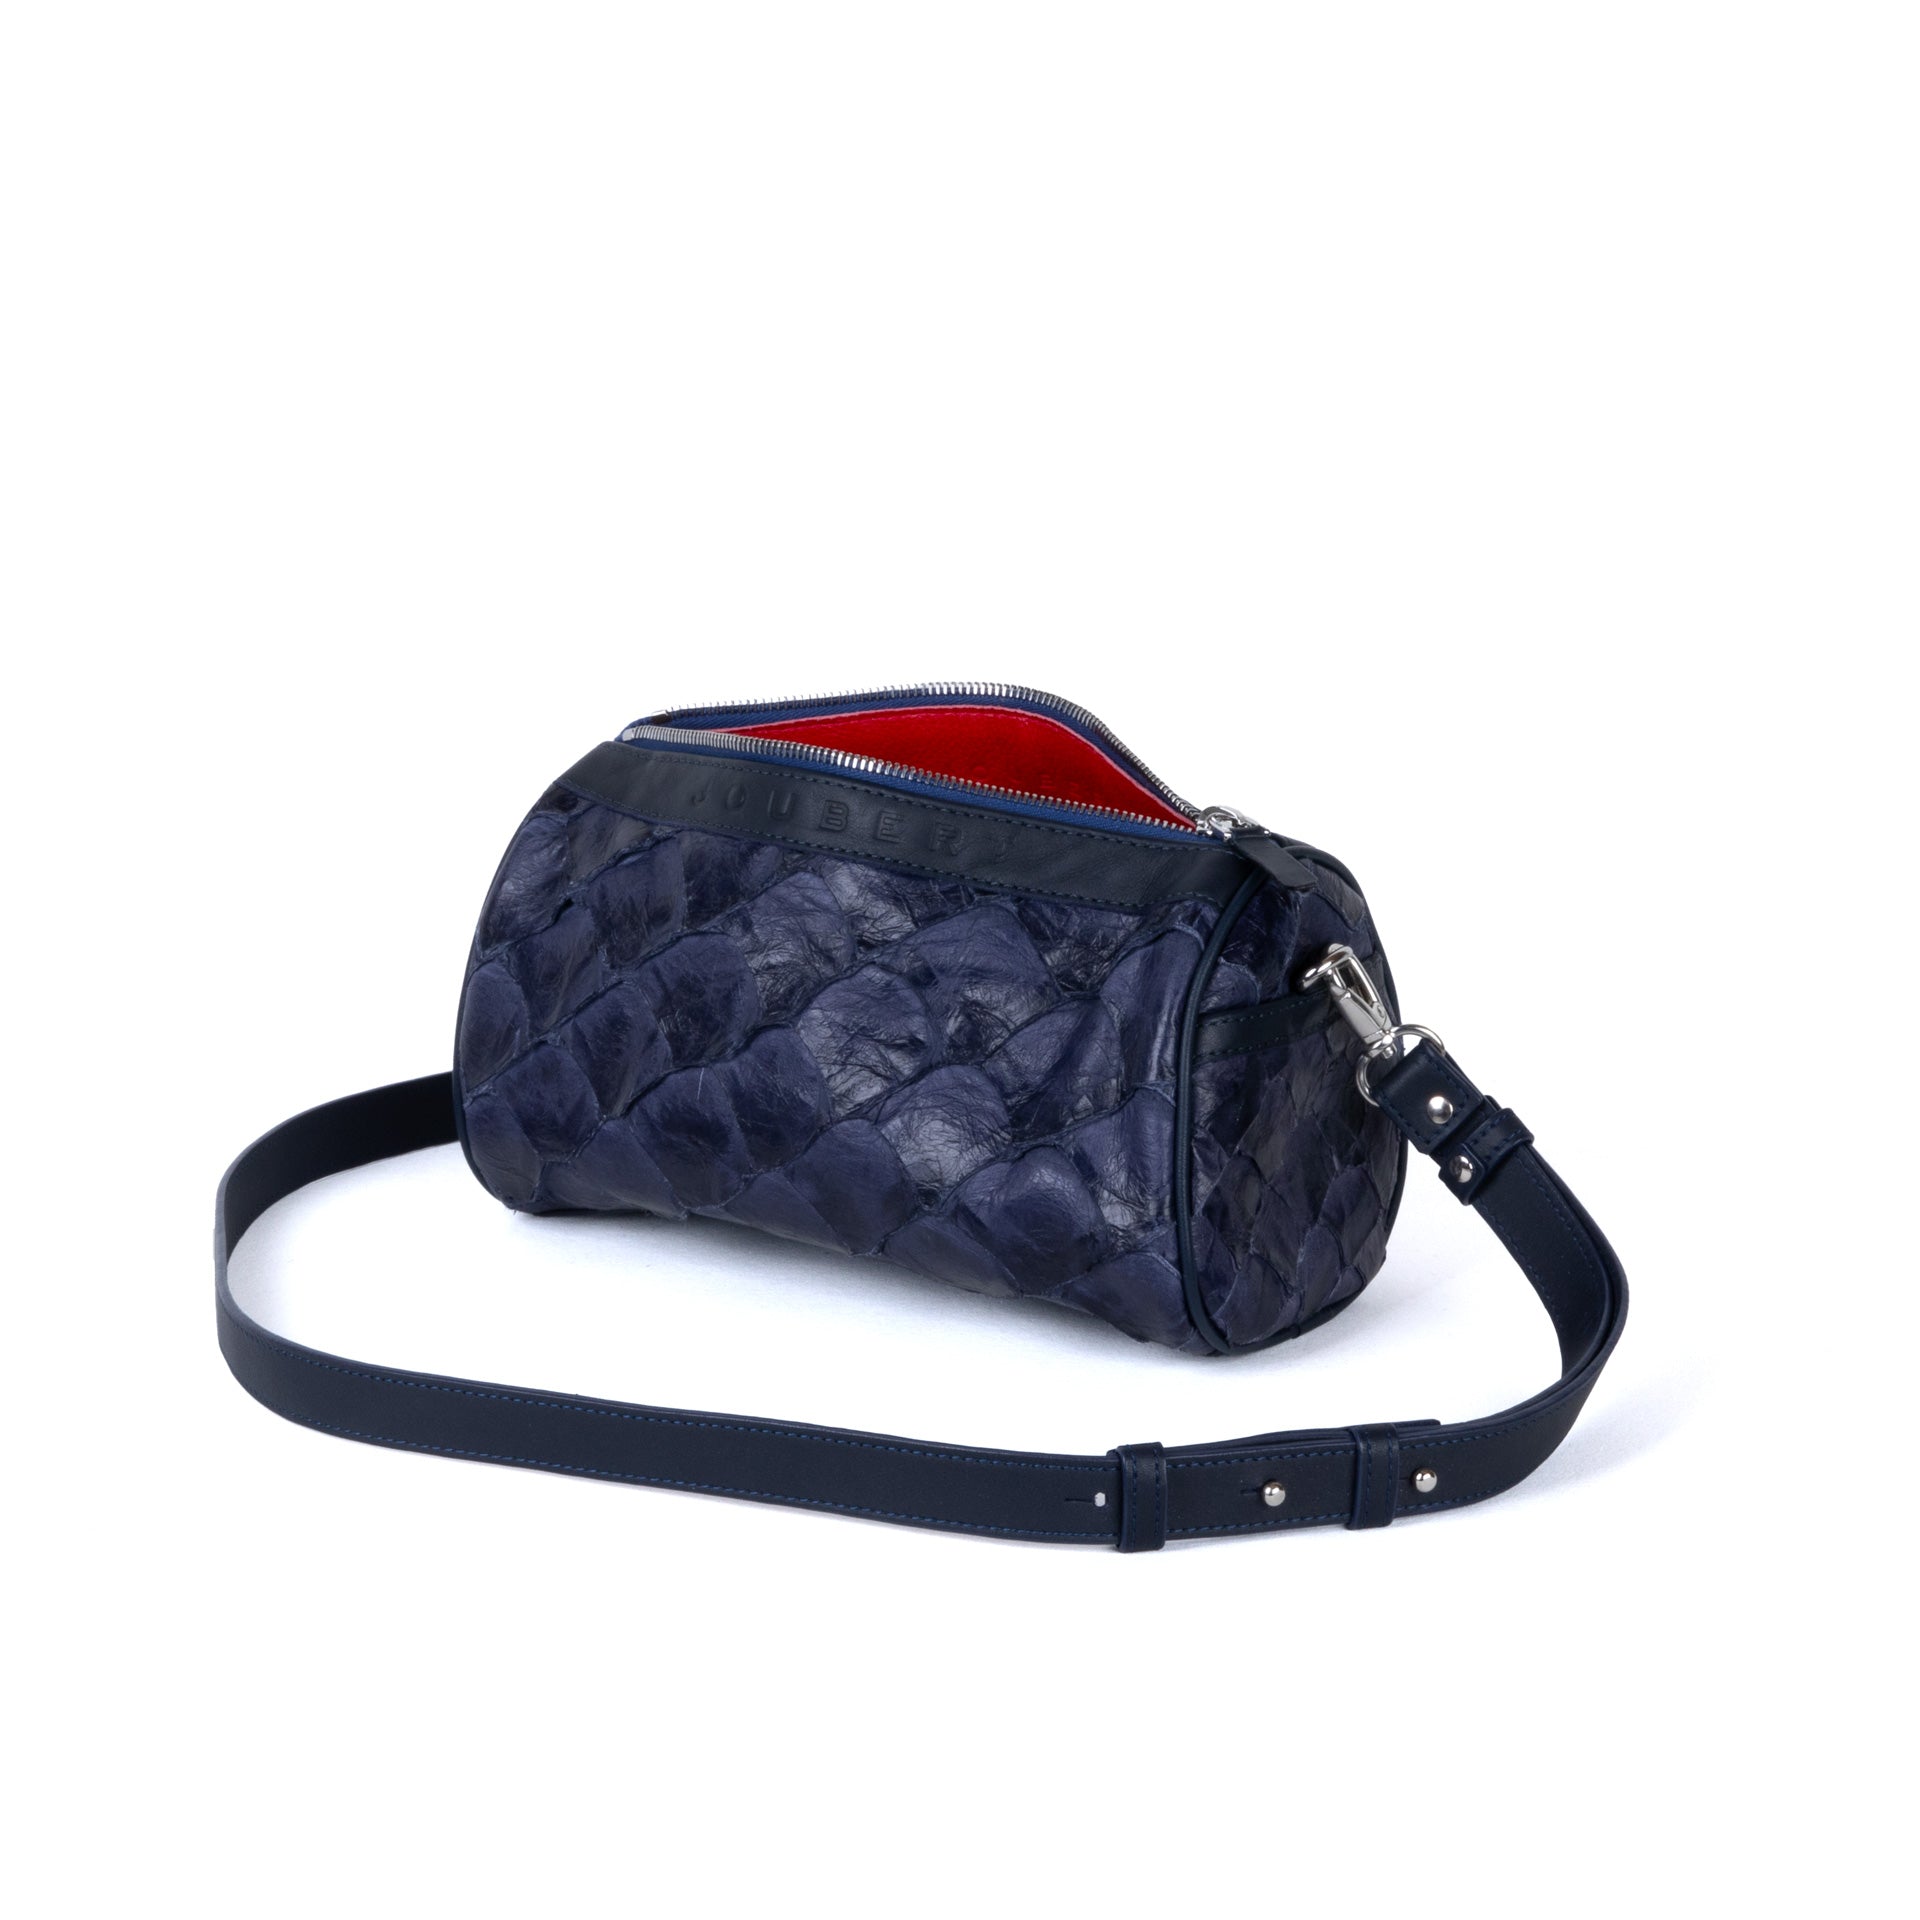 Bag 22 - Arapaima Leather